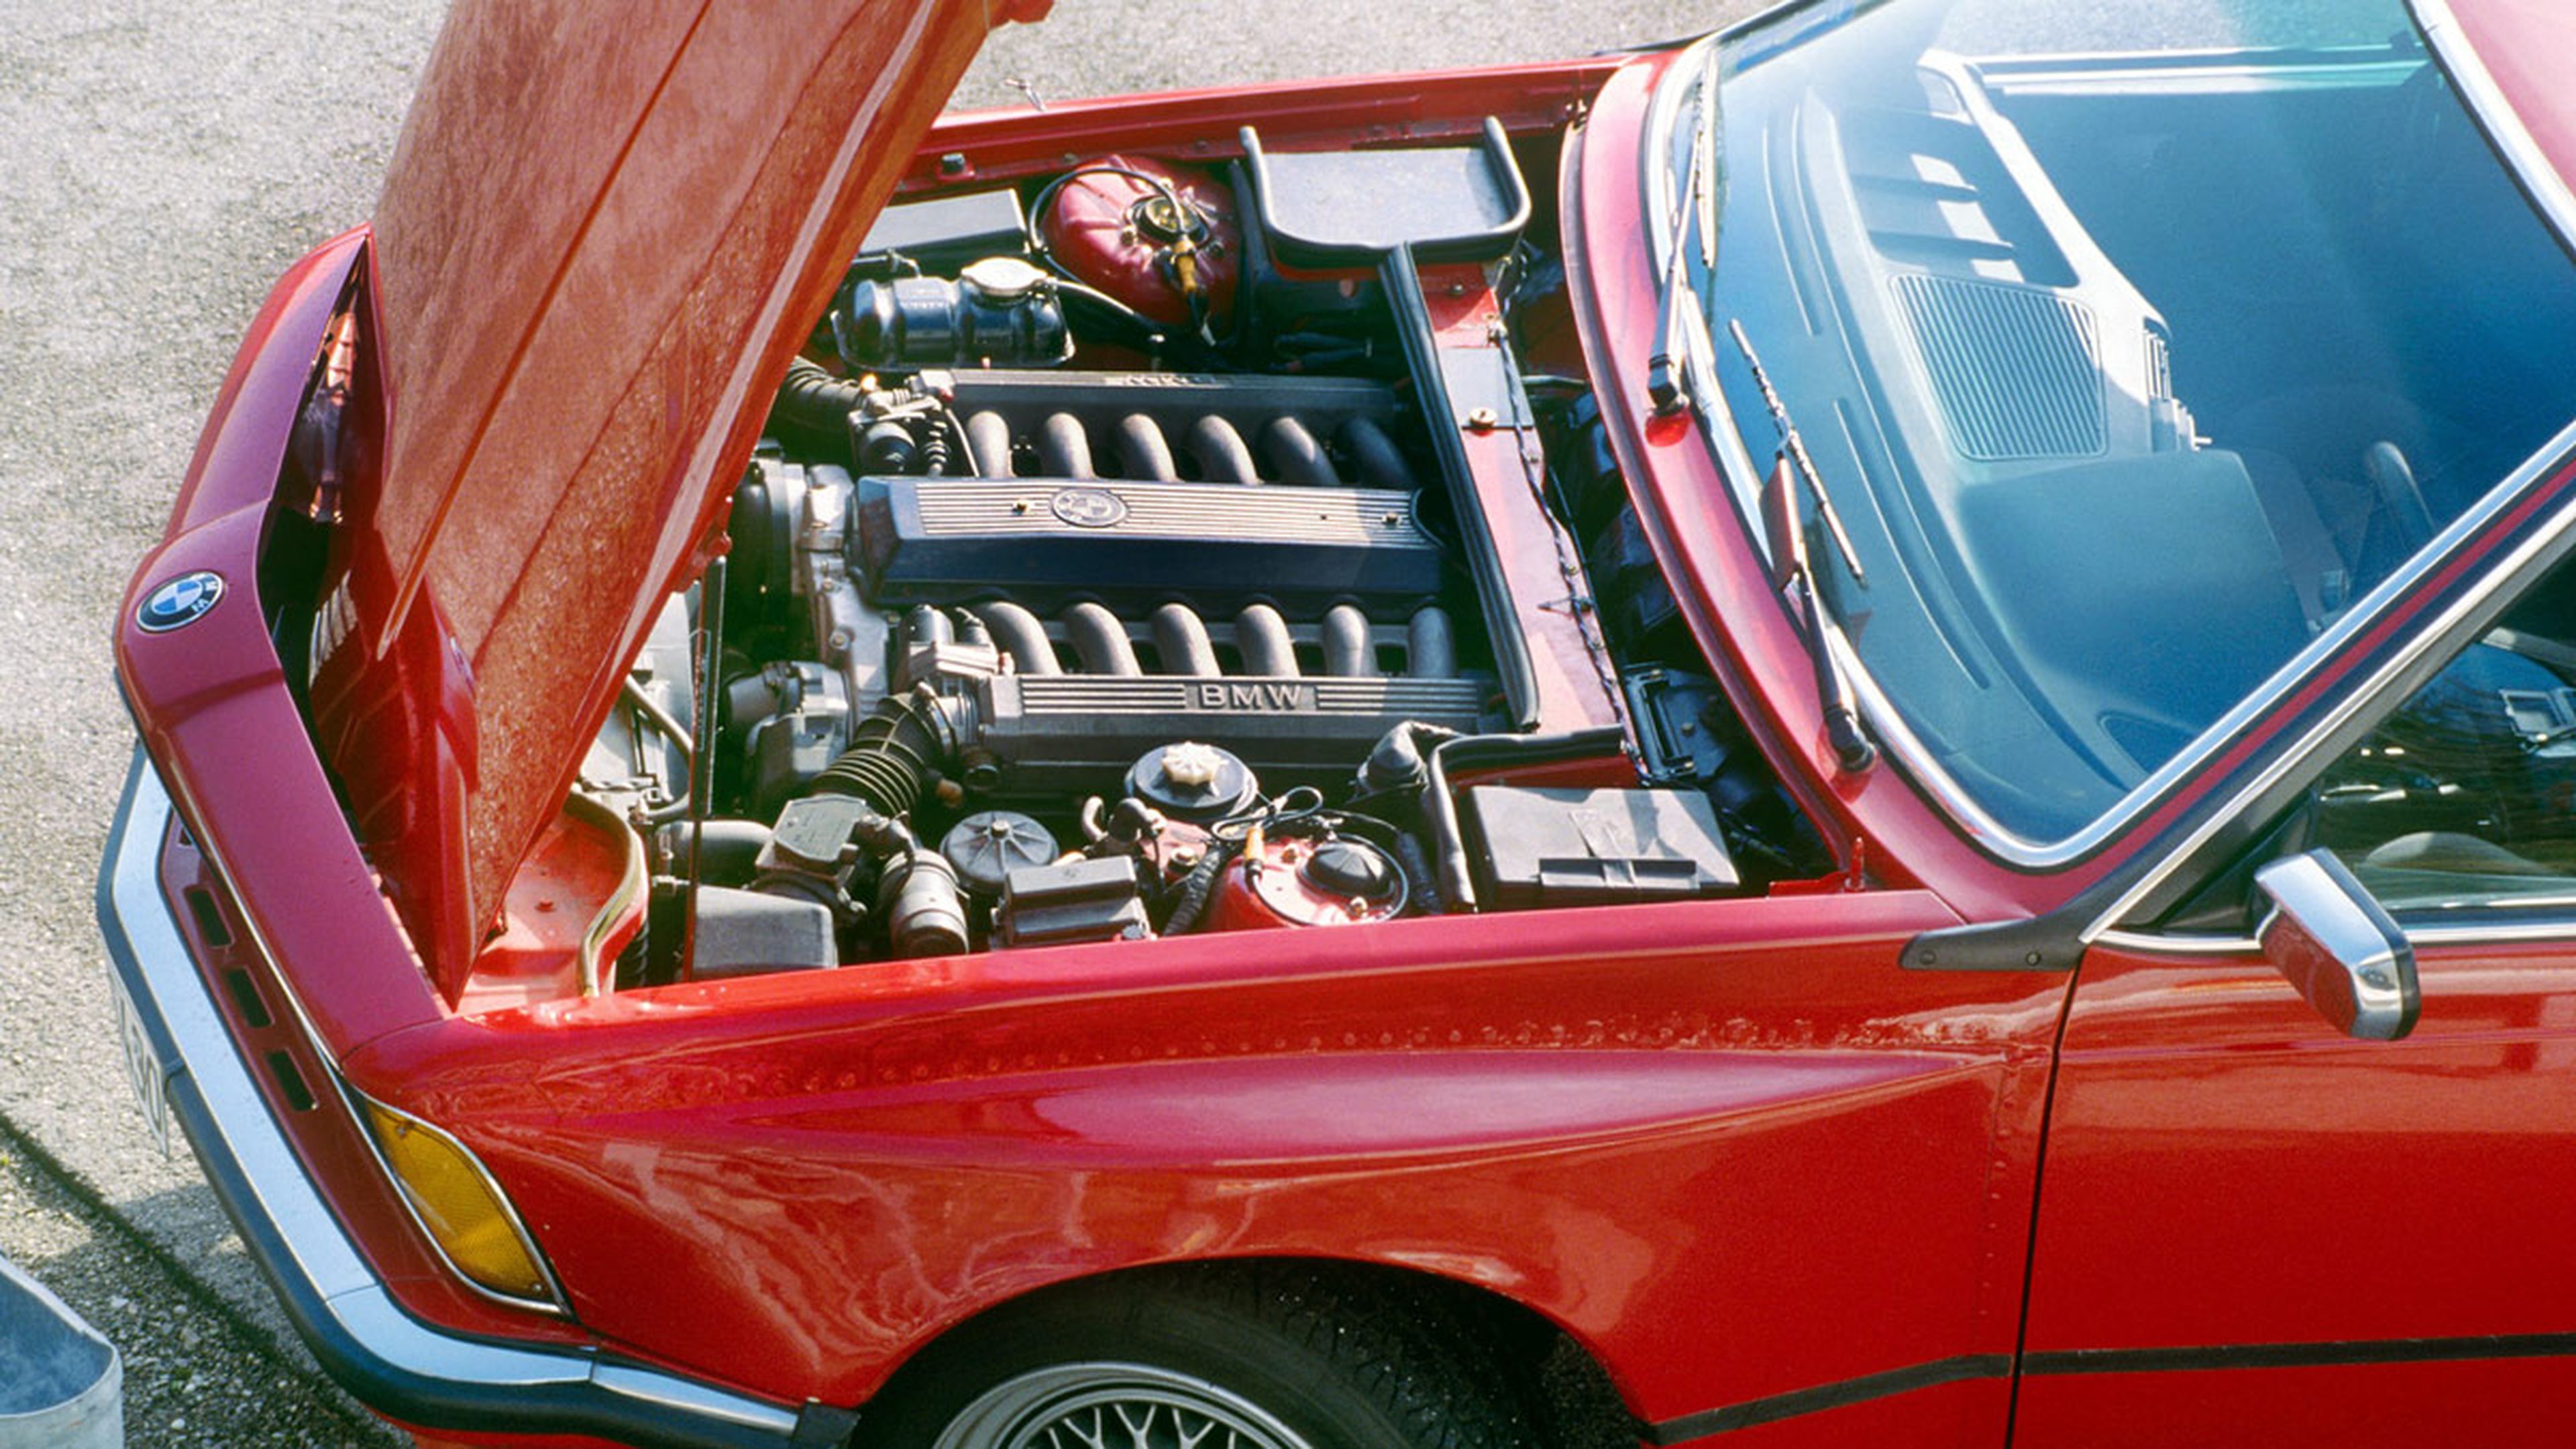 BMW Serie 6 e24 motor v12